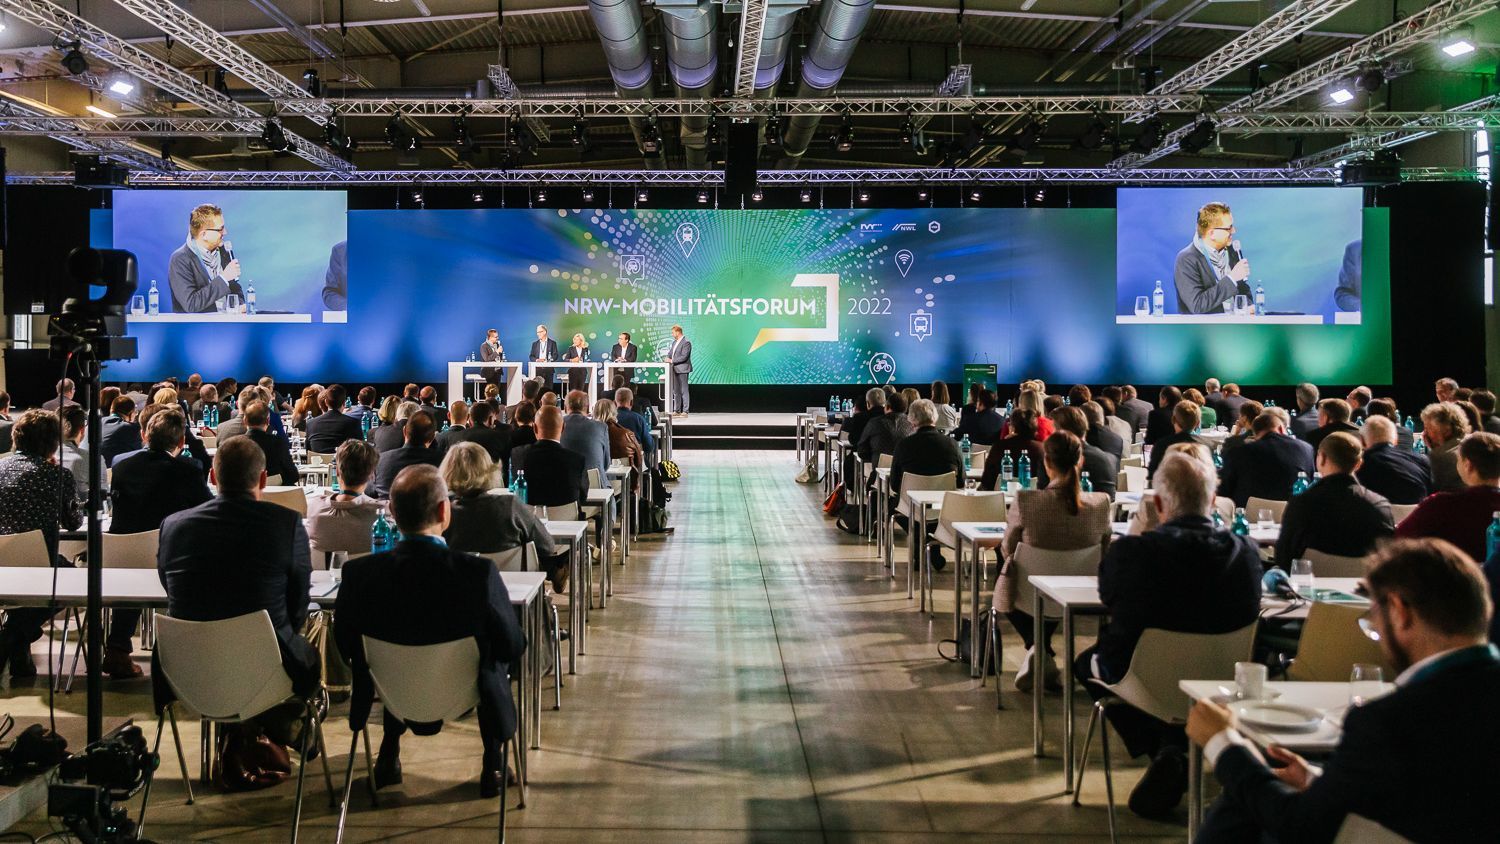 Wir sehen den Tagungssaal der Kölner XPOST, in dem im Oktober 2022 das 3. NRW-Mobilitätsforum stattgefunden hat. (tbc.)